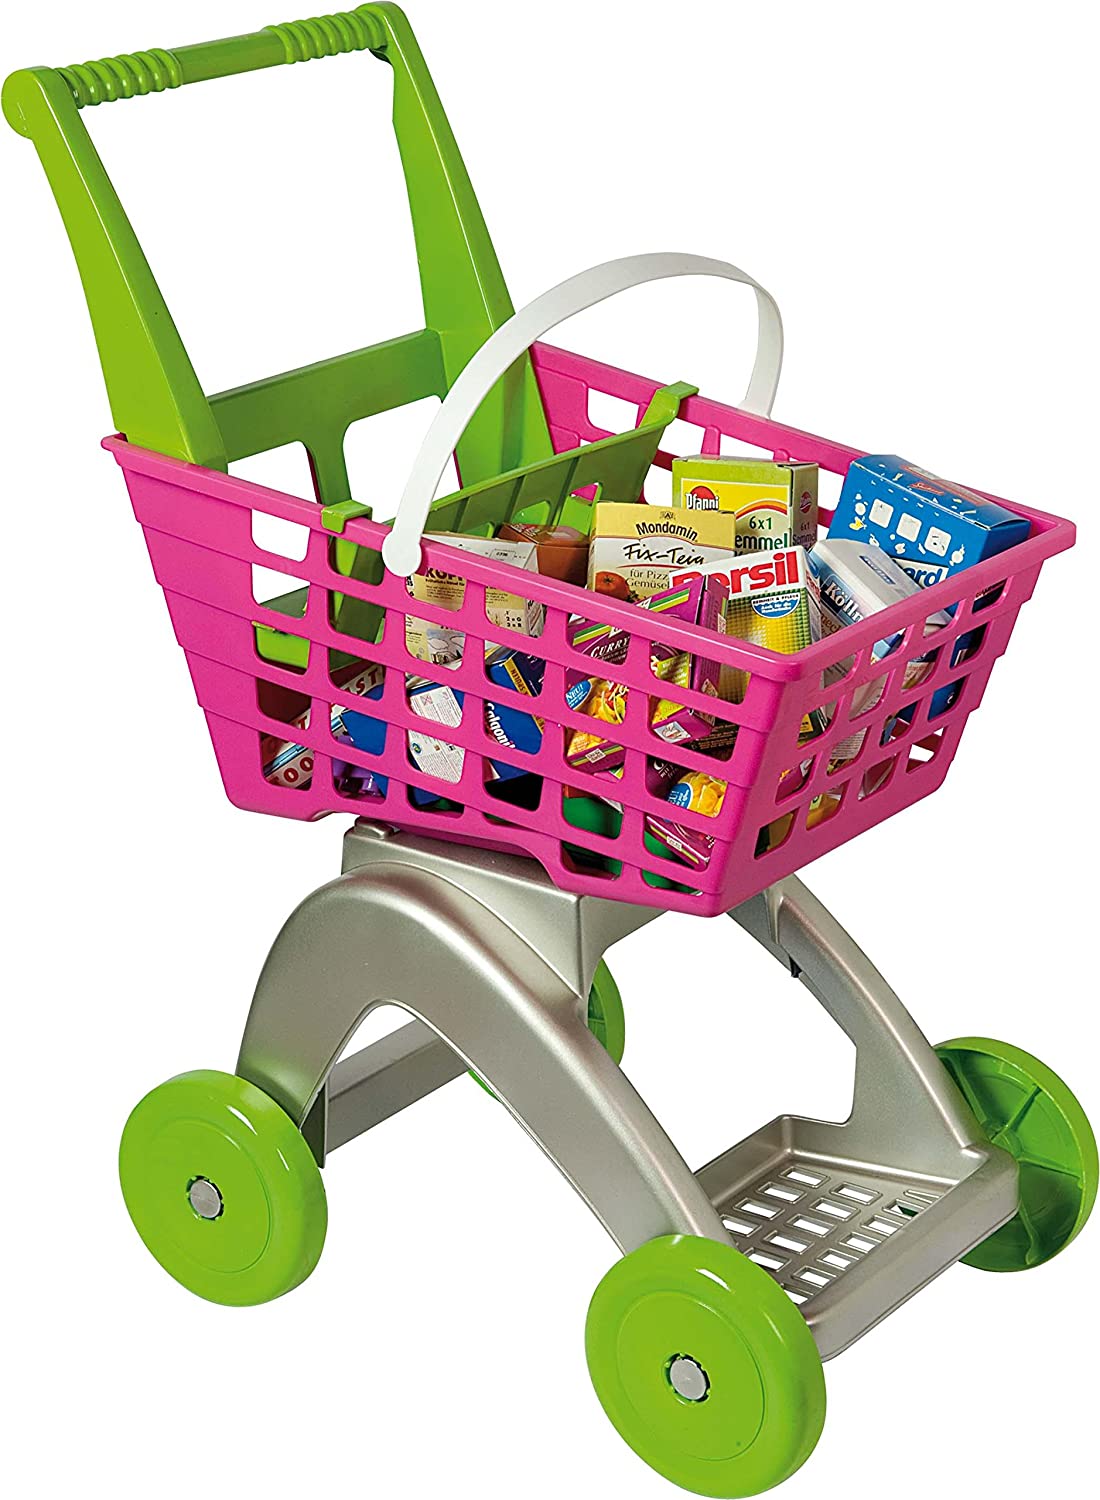 Carrello Giocattolo Supermercato Rolly Trolley Spesa Gioco Per Bambini.